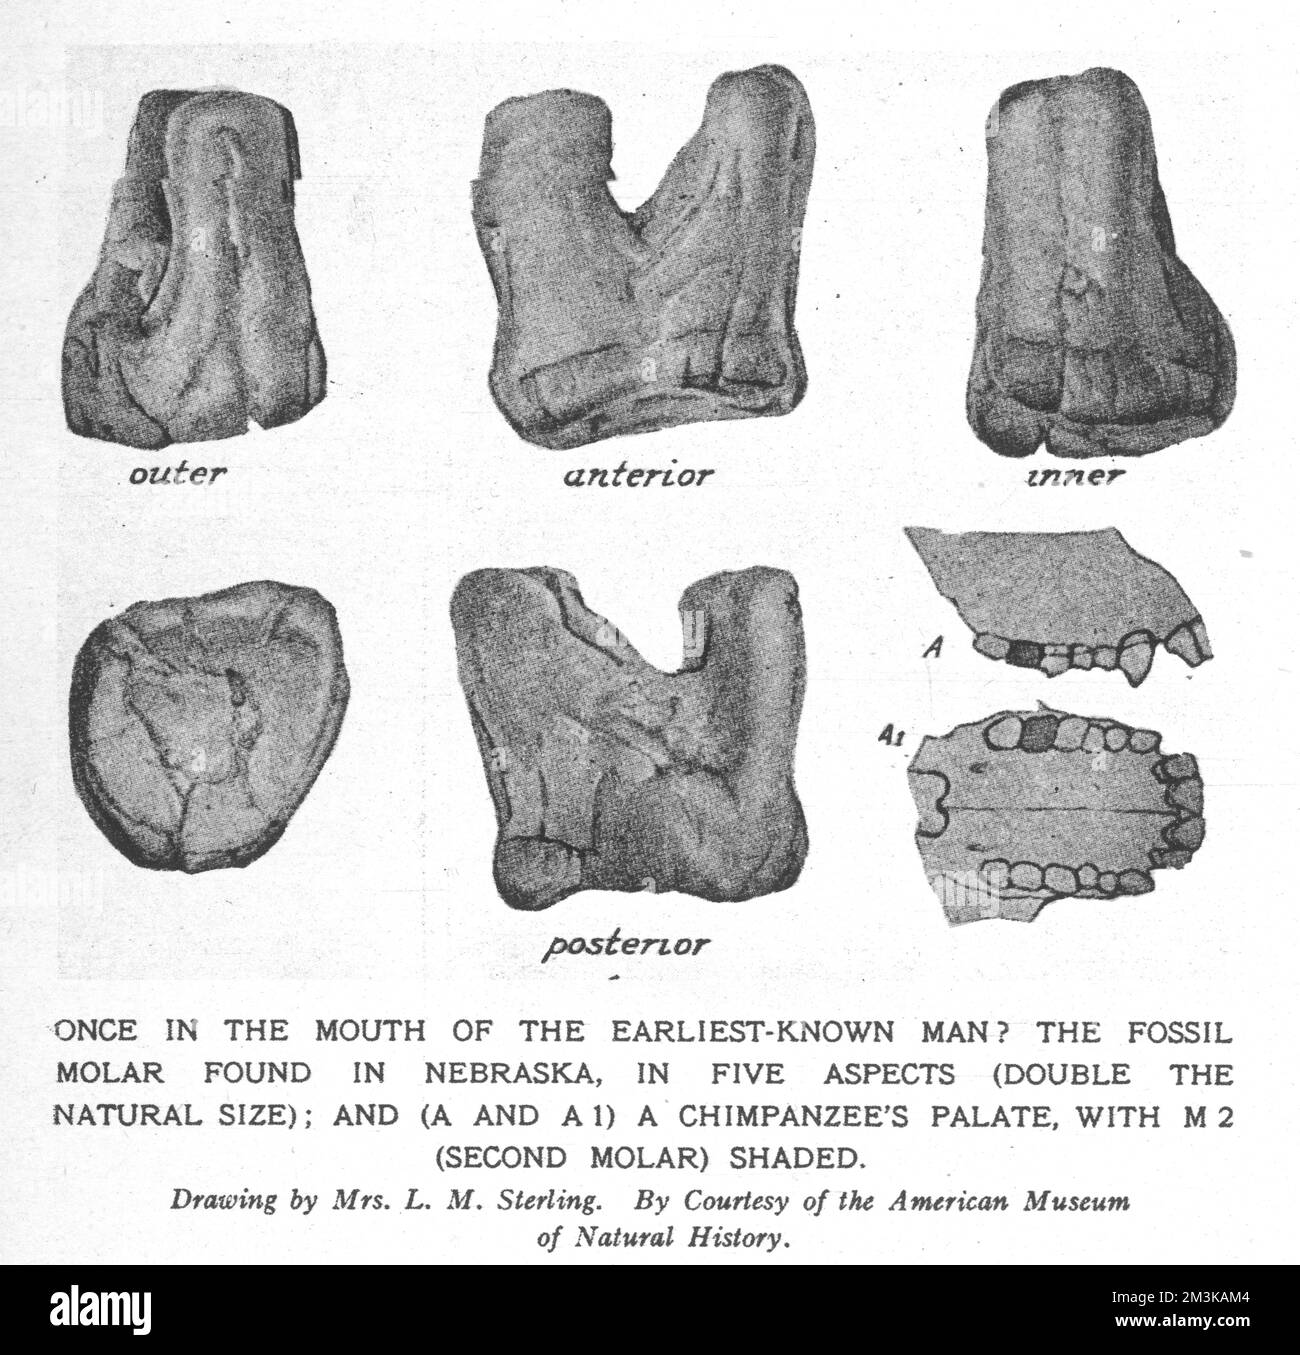 Zeichnung eines fossilen Molaren, der in Nebraska gefunden wurde und vermutlich dem frühen Menschen gehört - Hesperopithecus (Ape-man der westlichen Welt). Datum: Vorgeschichte Stockfoto